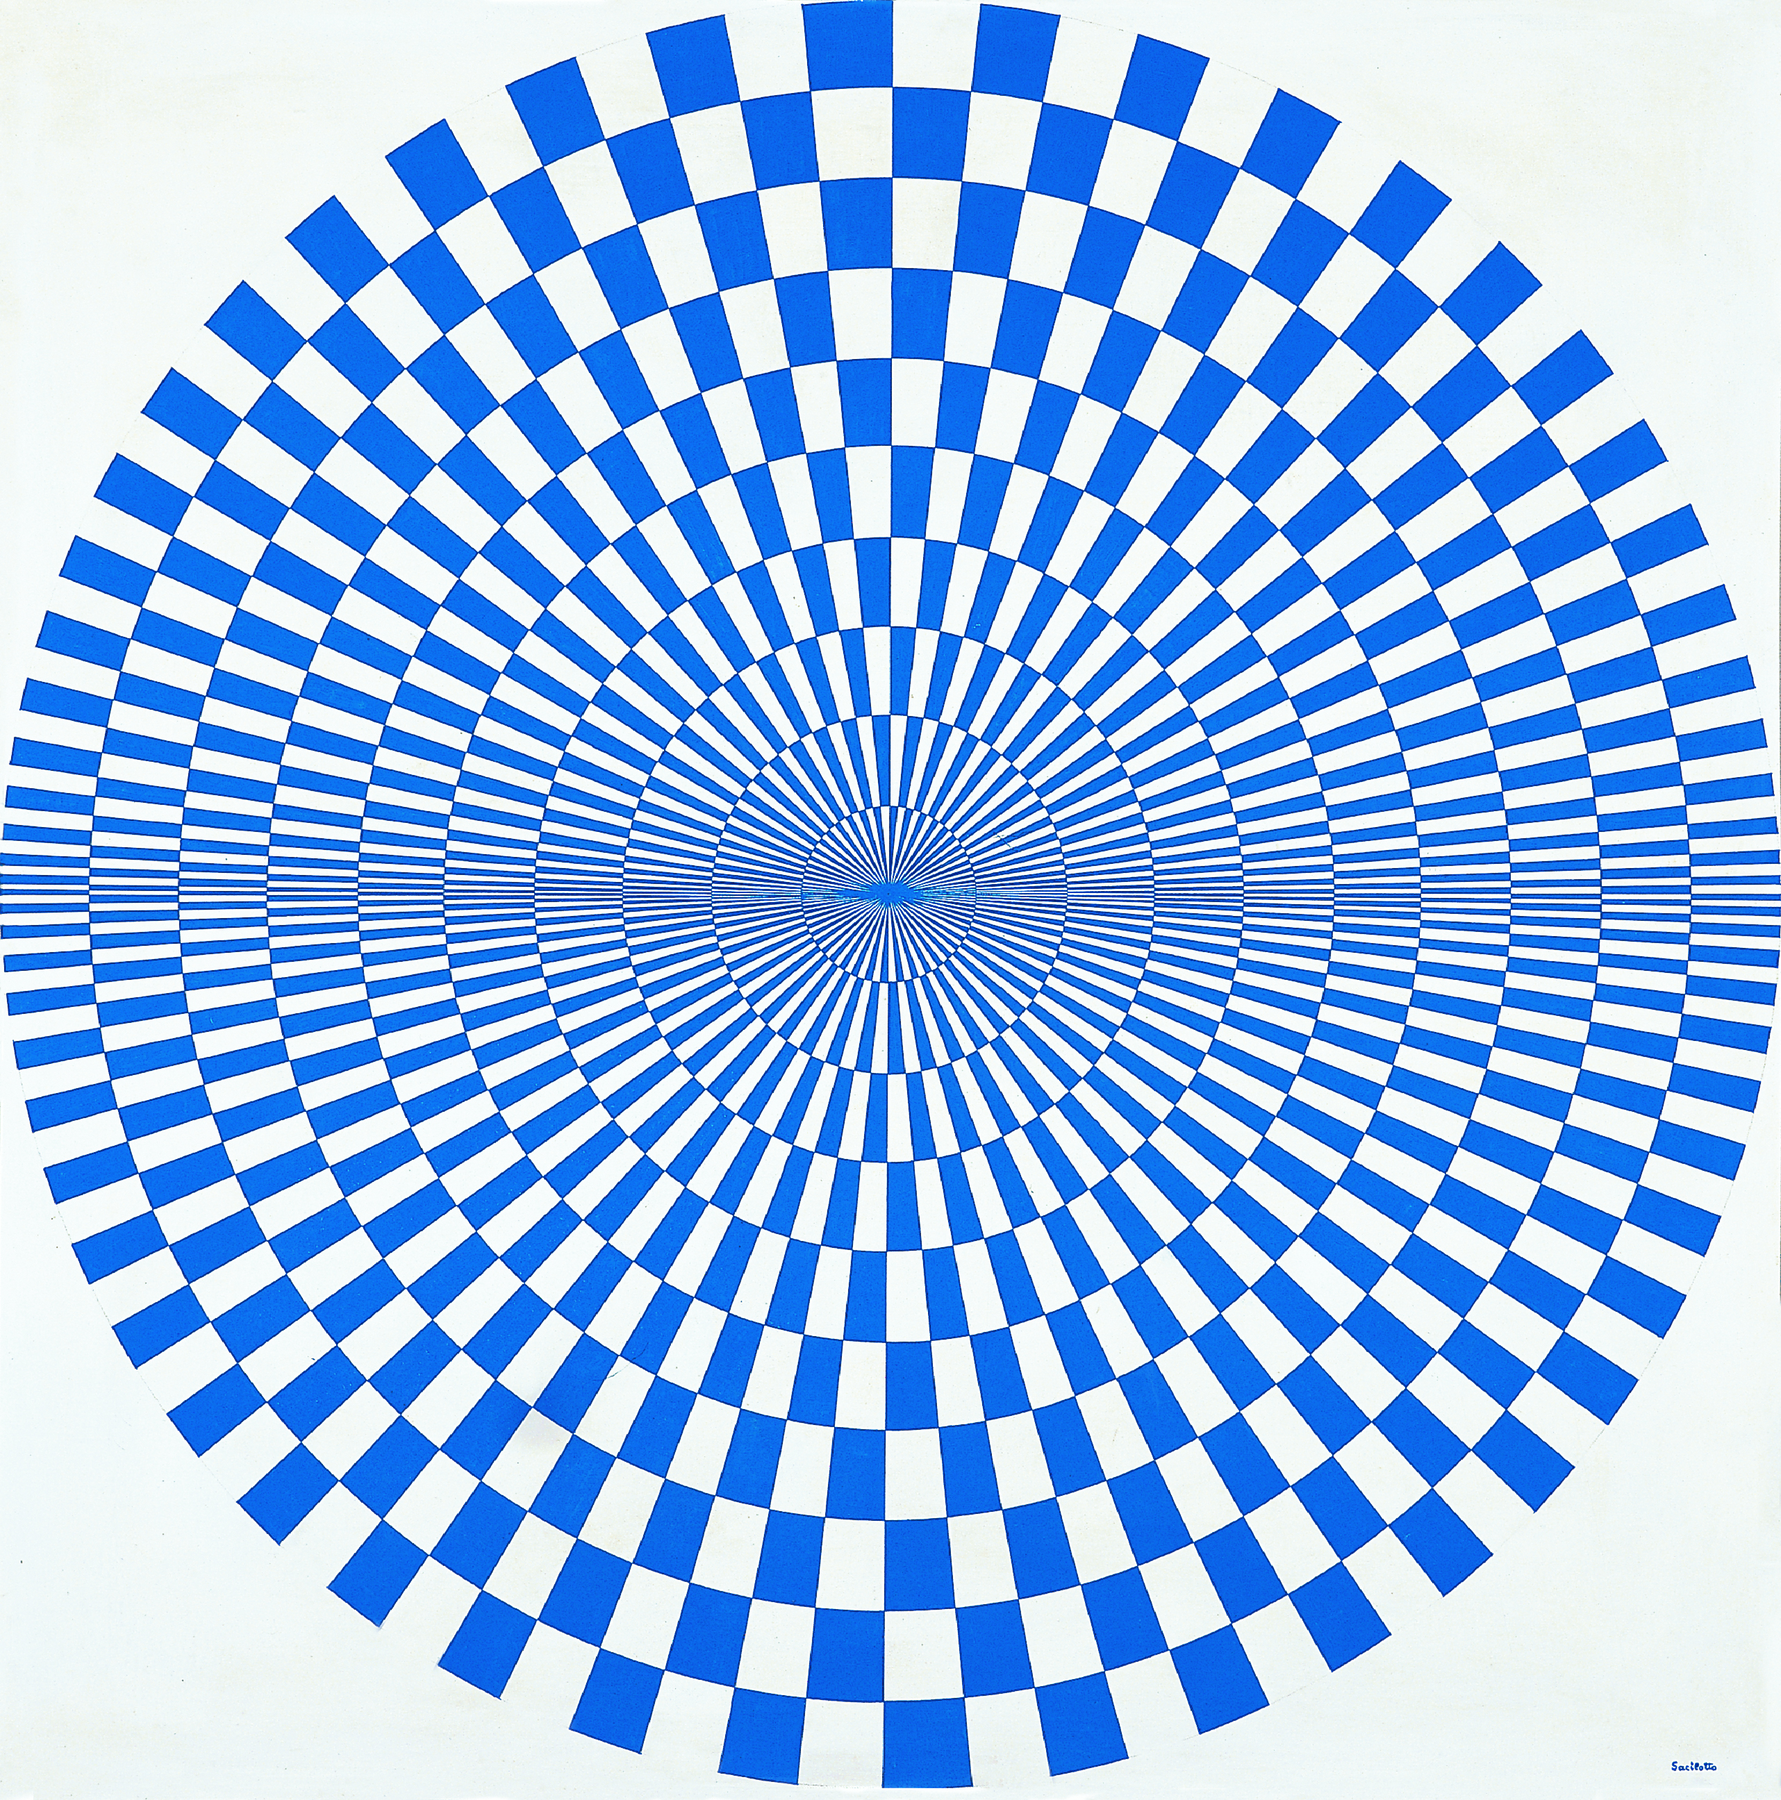 Pintura. Sobre um fundo branco, setores circulares compostos por figuras geométricas intercaladas, brancas e azuis, que lembram quadriláteros. Esses setores vão se afunilando no centro.